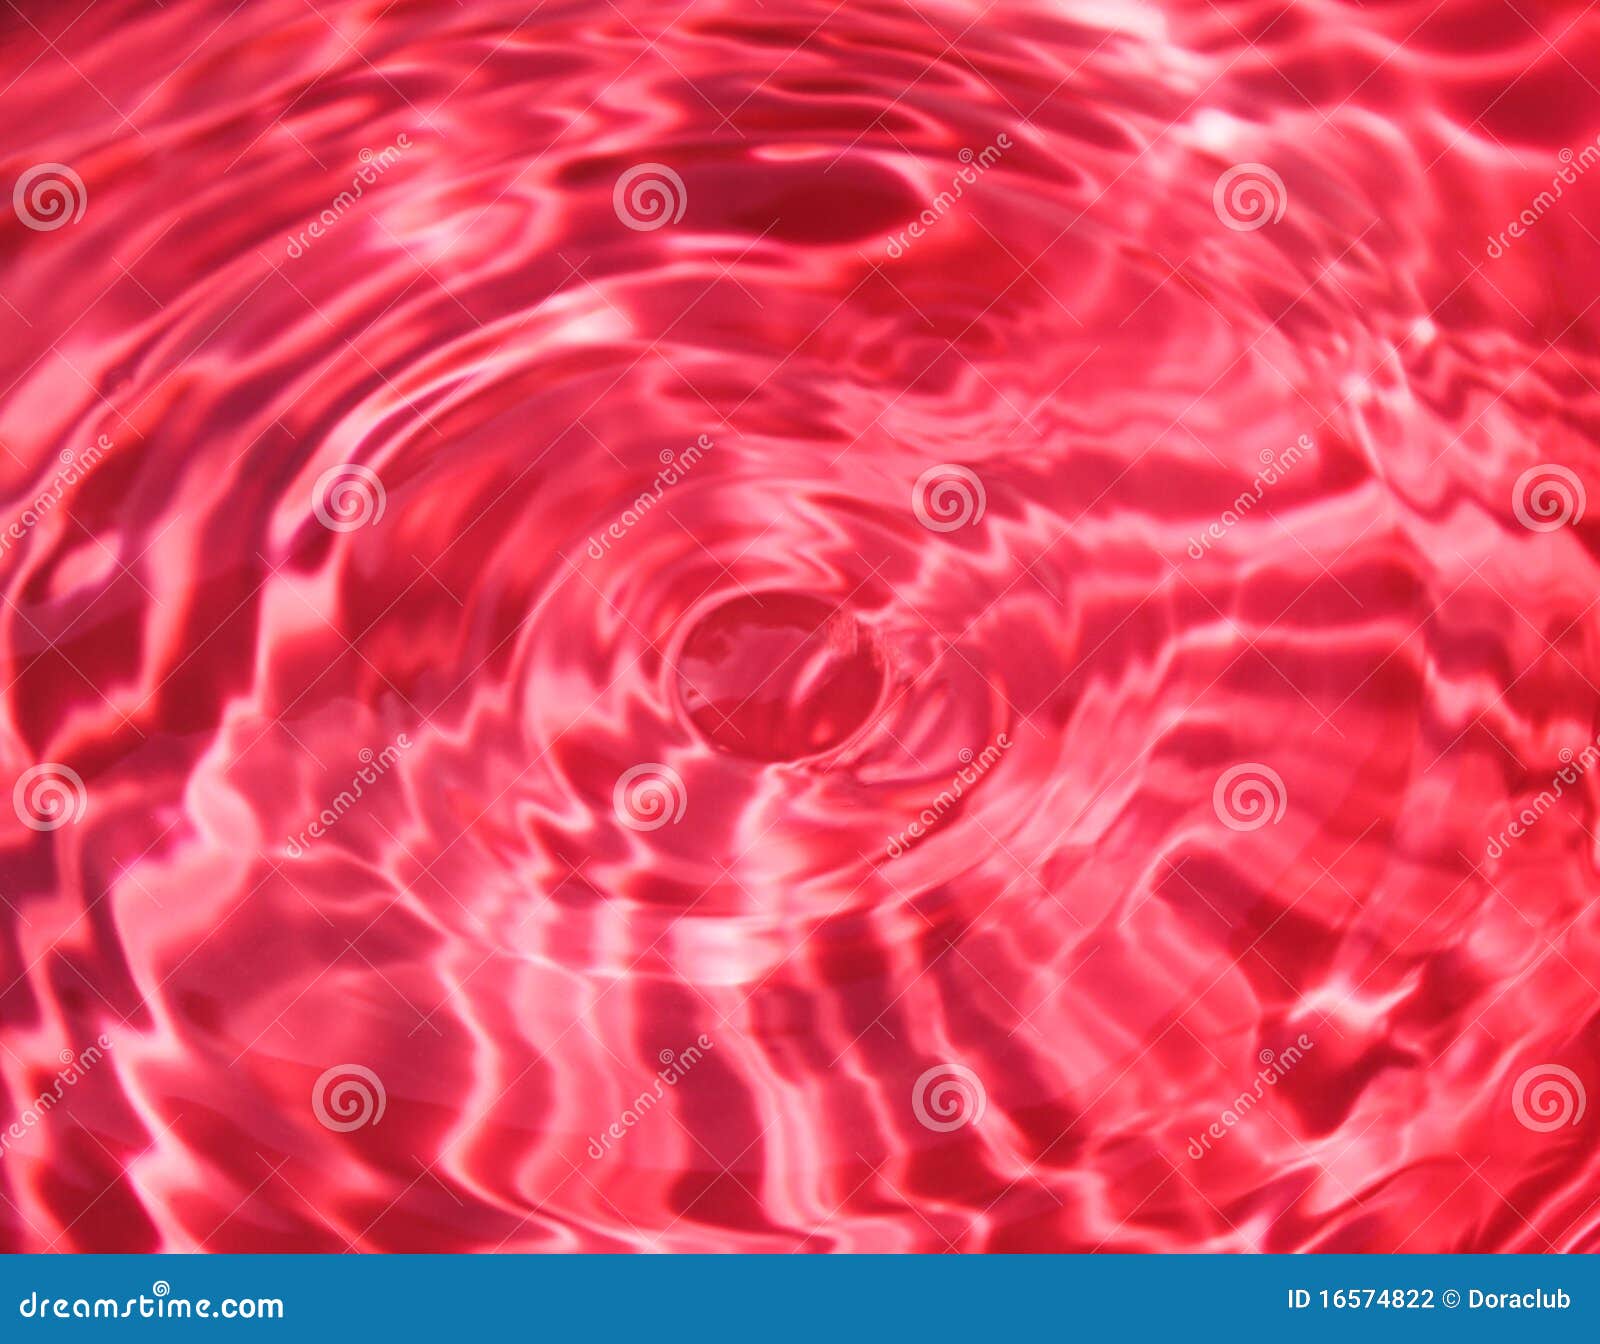 Красная вода видео. Красный фон вода. Внутри на поверхности красное. Поток воды иллюстрация. Круги на воде красный.